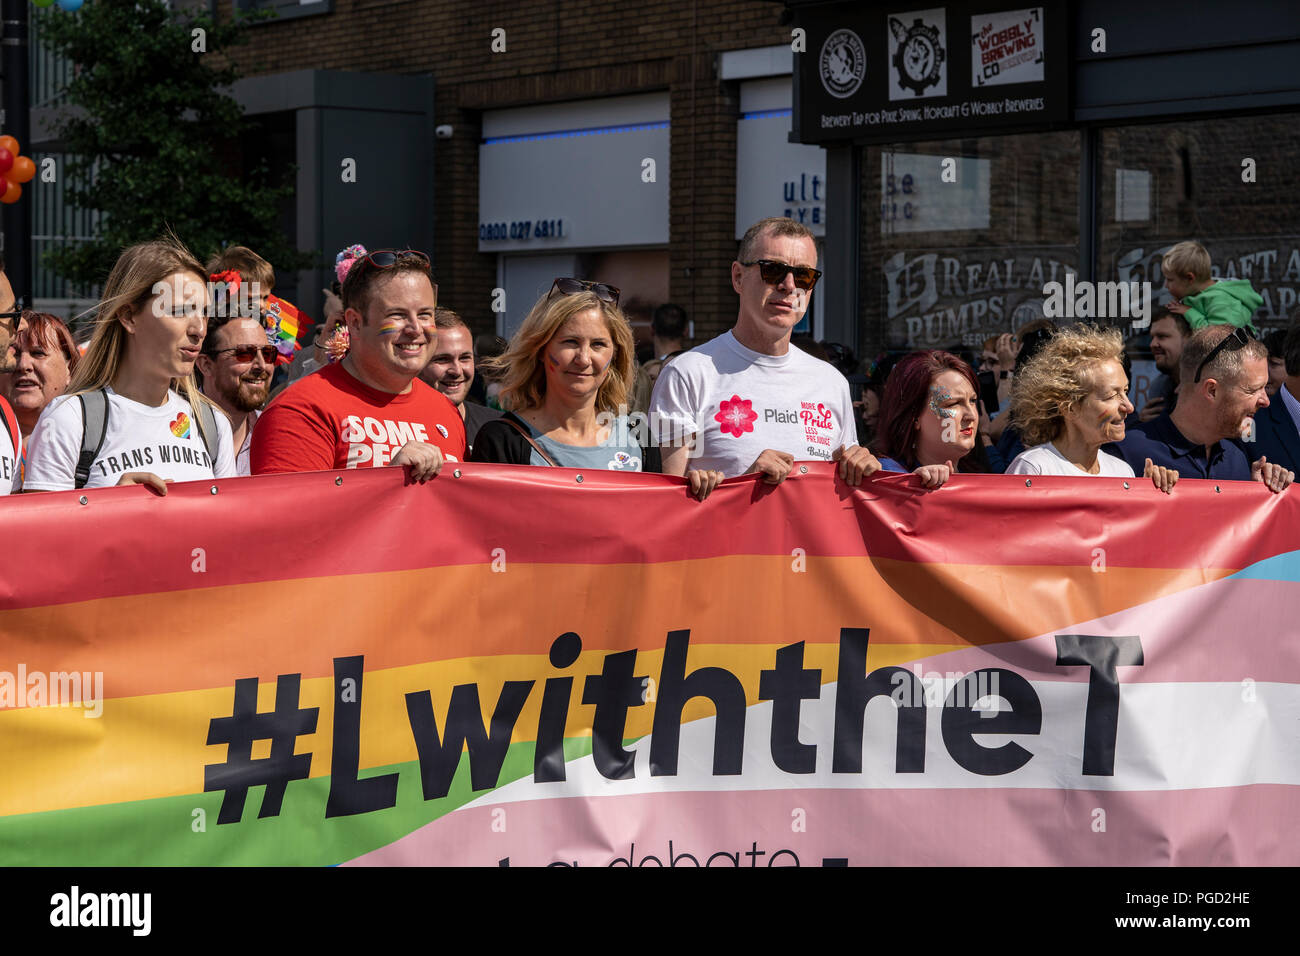 Cardiff, Pays de Galles, le 25 août 2018 marcheurs : participer à l'assemblée annuelle Pride Parade Cymru à Cardiff au Pays de Galles le 25 août 2018 ©Daniel Damaschin Crédit : Daniel Damaschin/Alamy Live News Banque D'Images